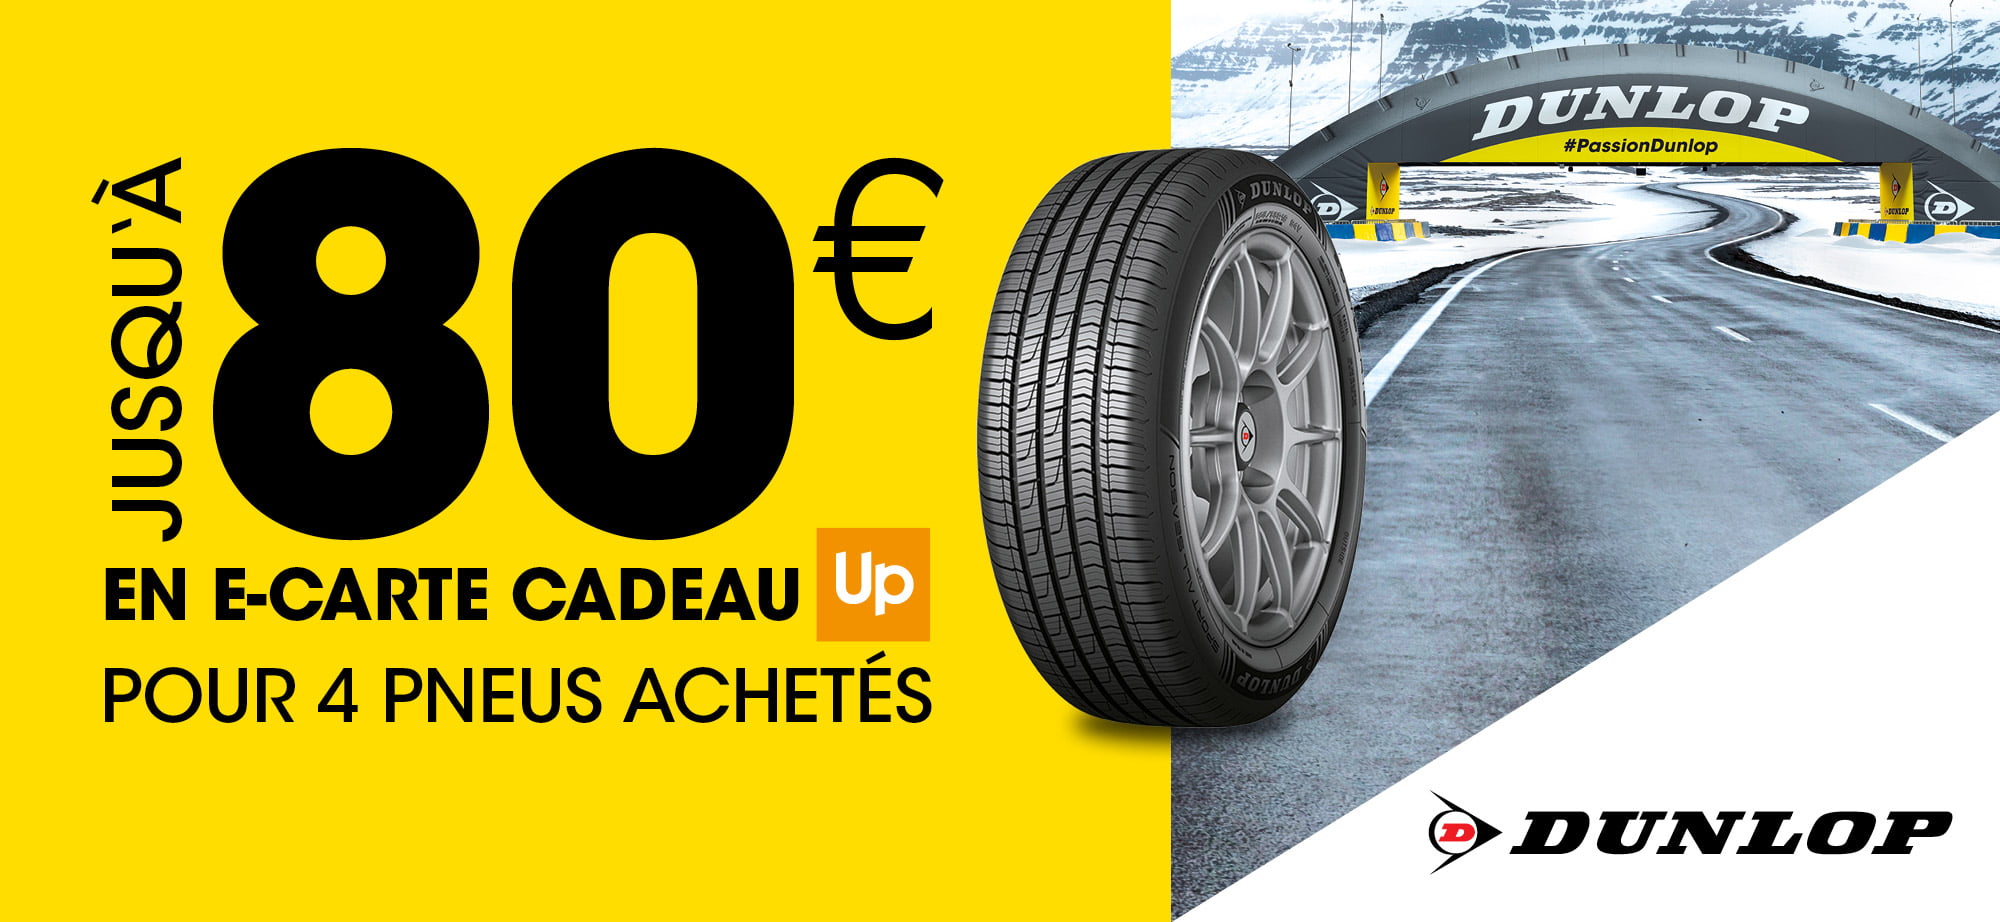 Jusqu'à 80 euros en carte cadeau Up pour 4 pneus Dunlop achetés